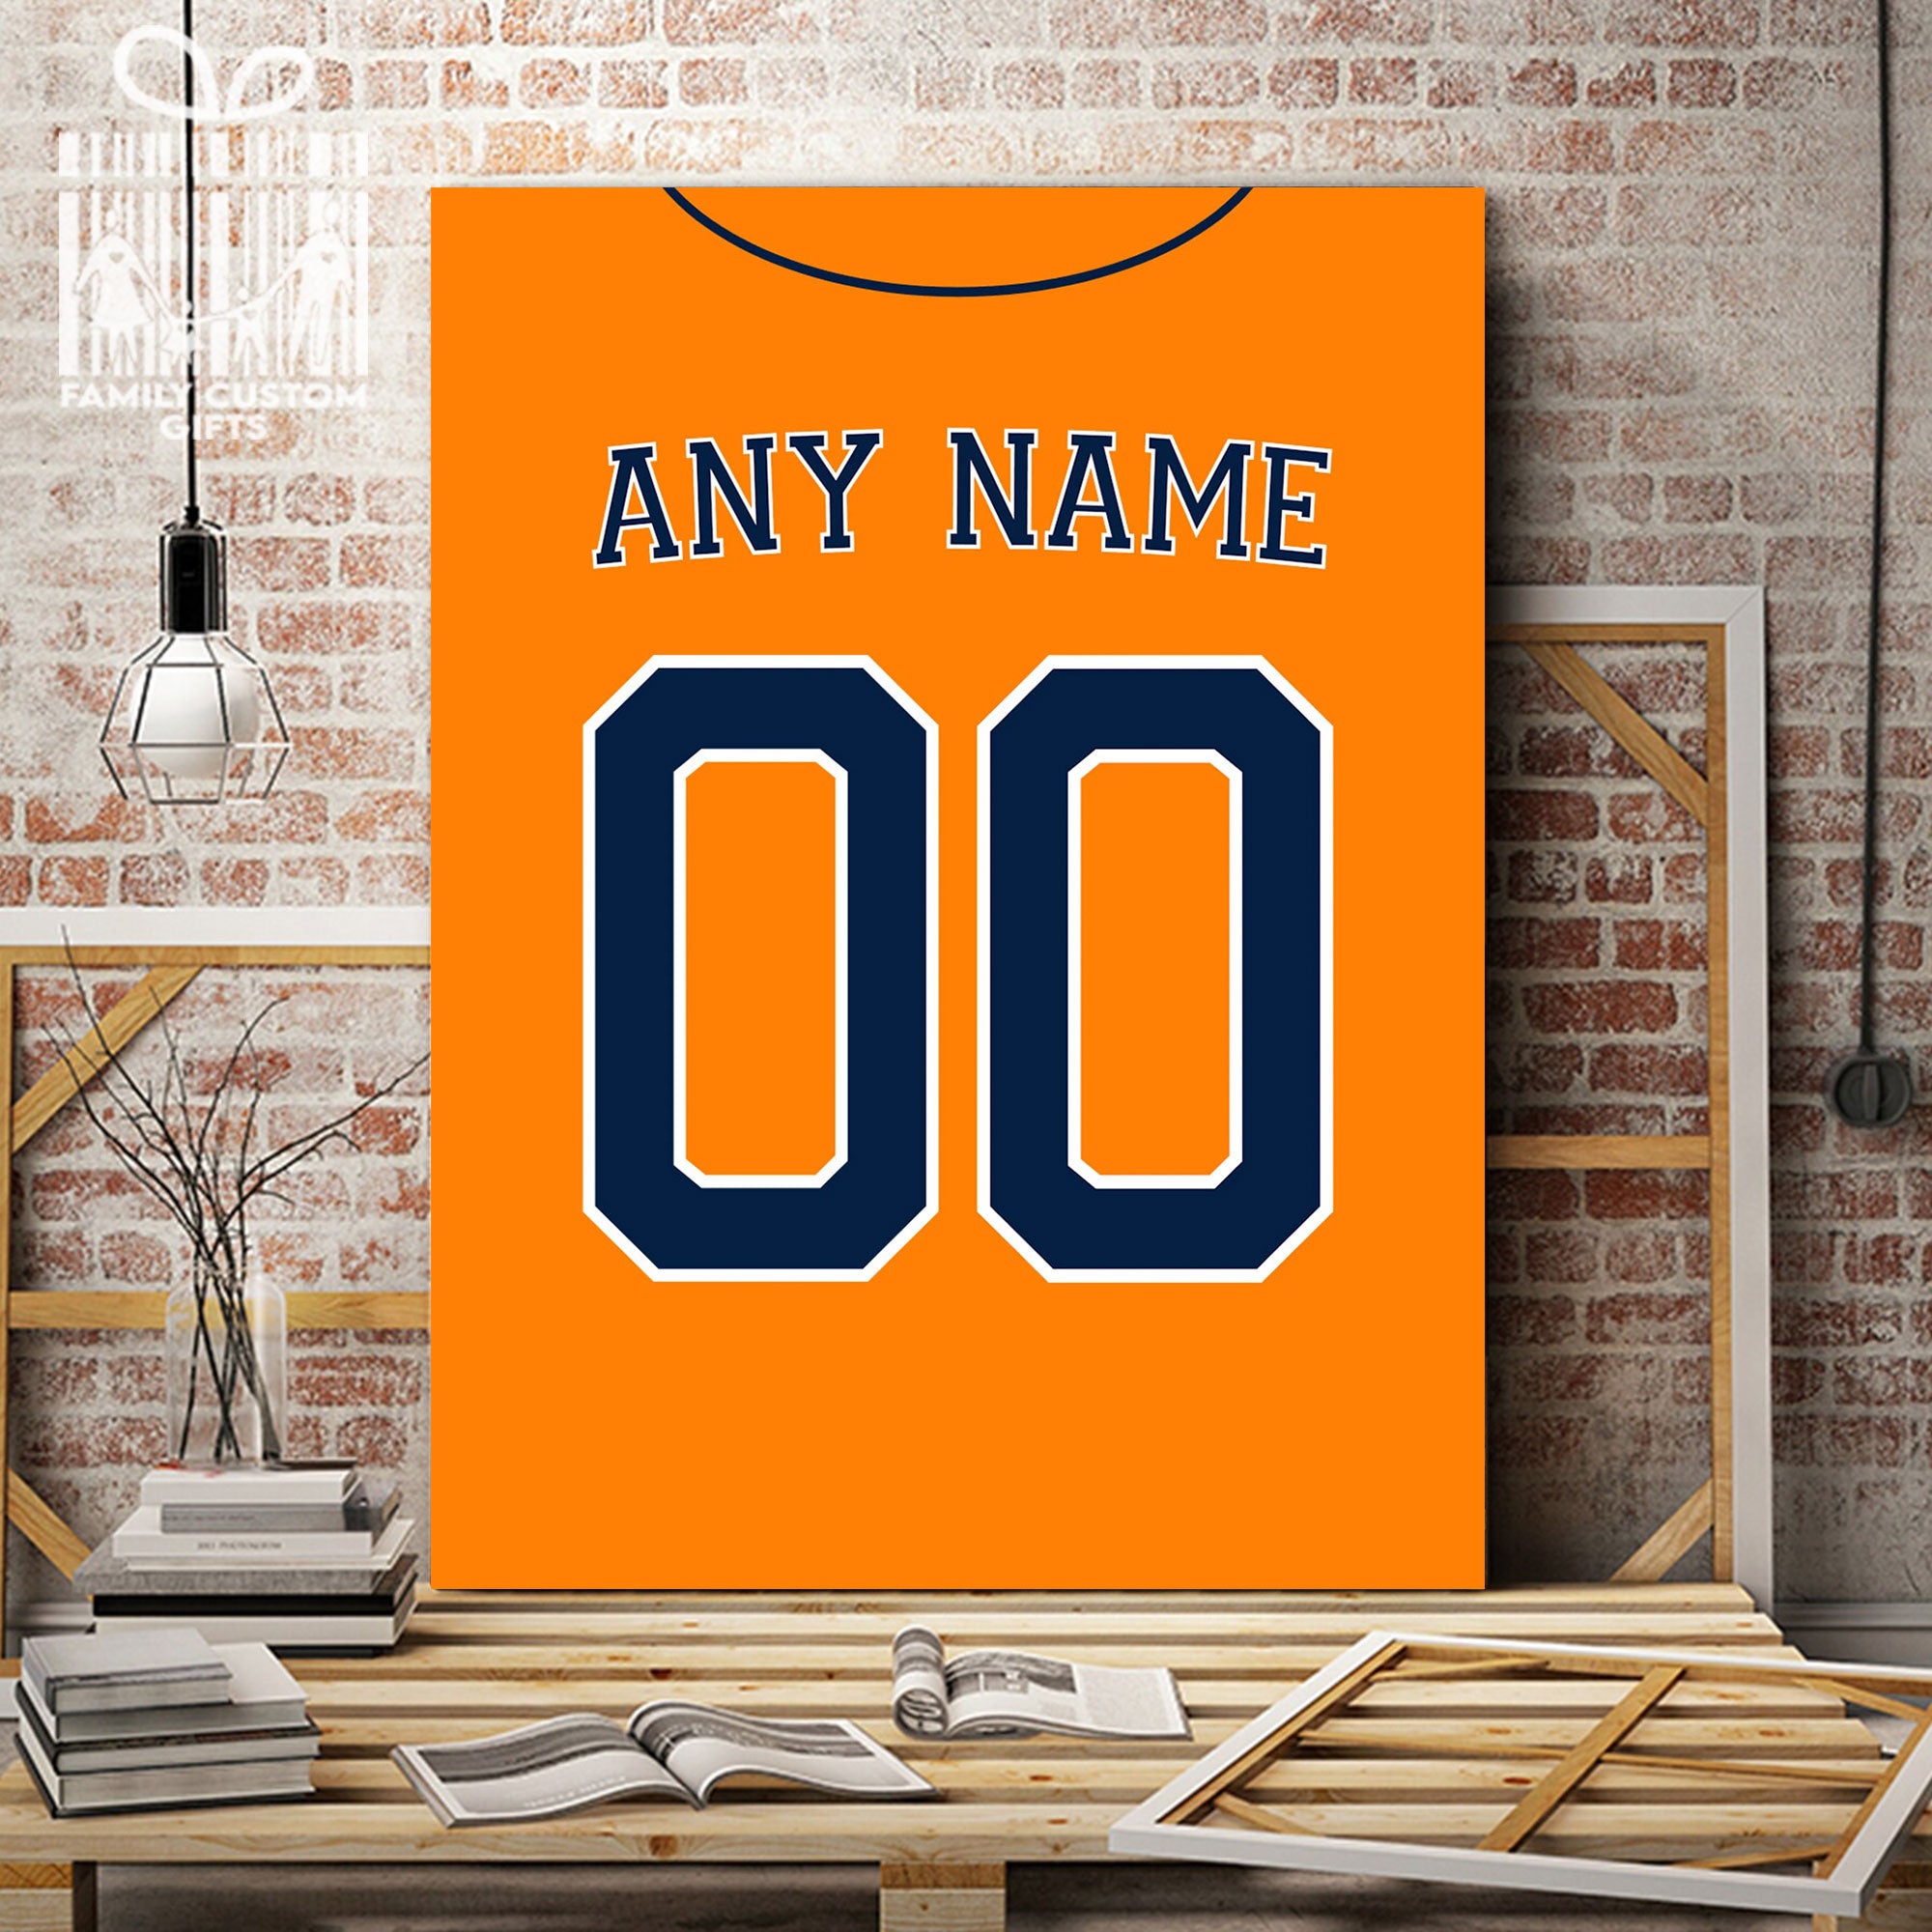 Houston Astros Custom Name & Number Baseball Shirt Best Gift For Men And  Women